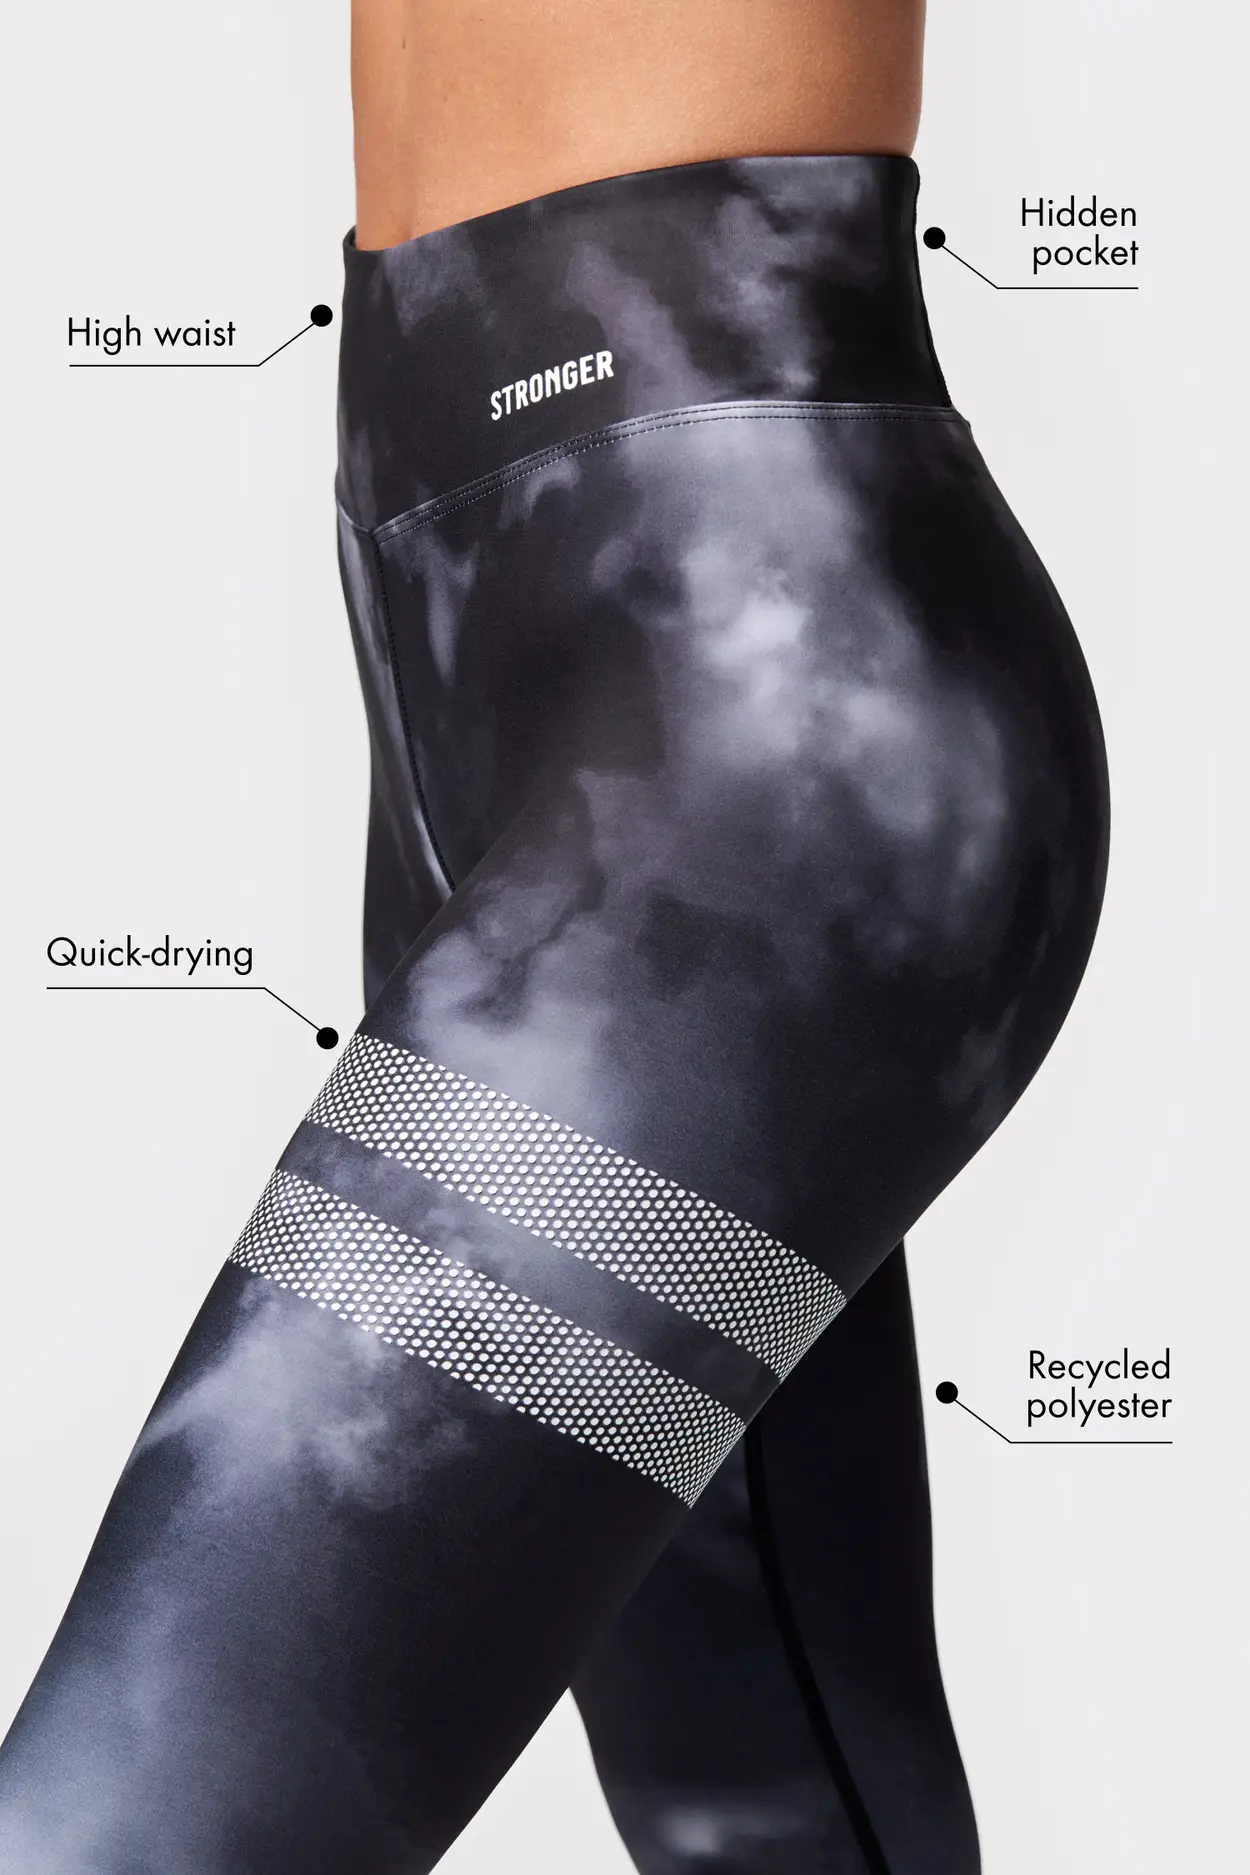 Legging ultra-opaques 100d sensation polaire noir ébène Well